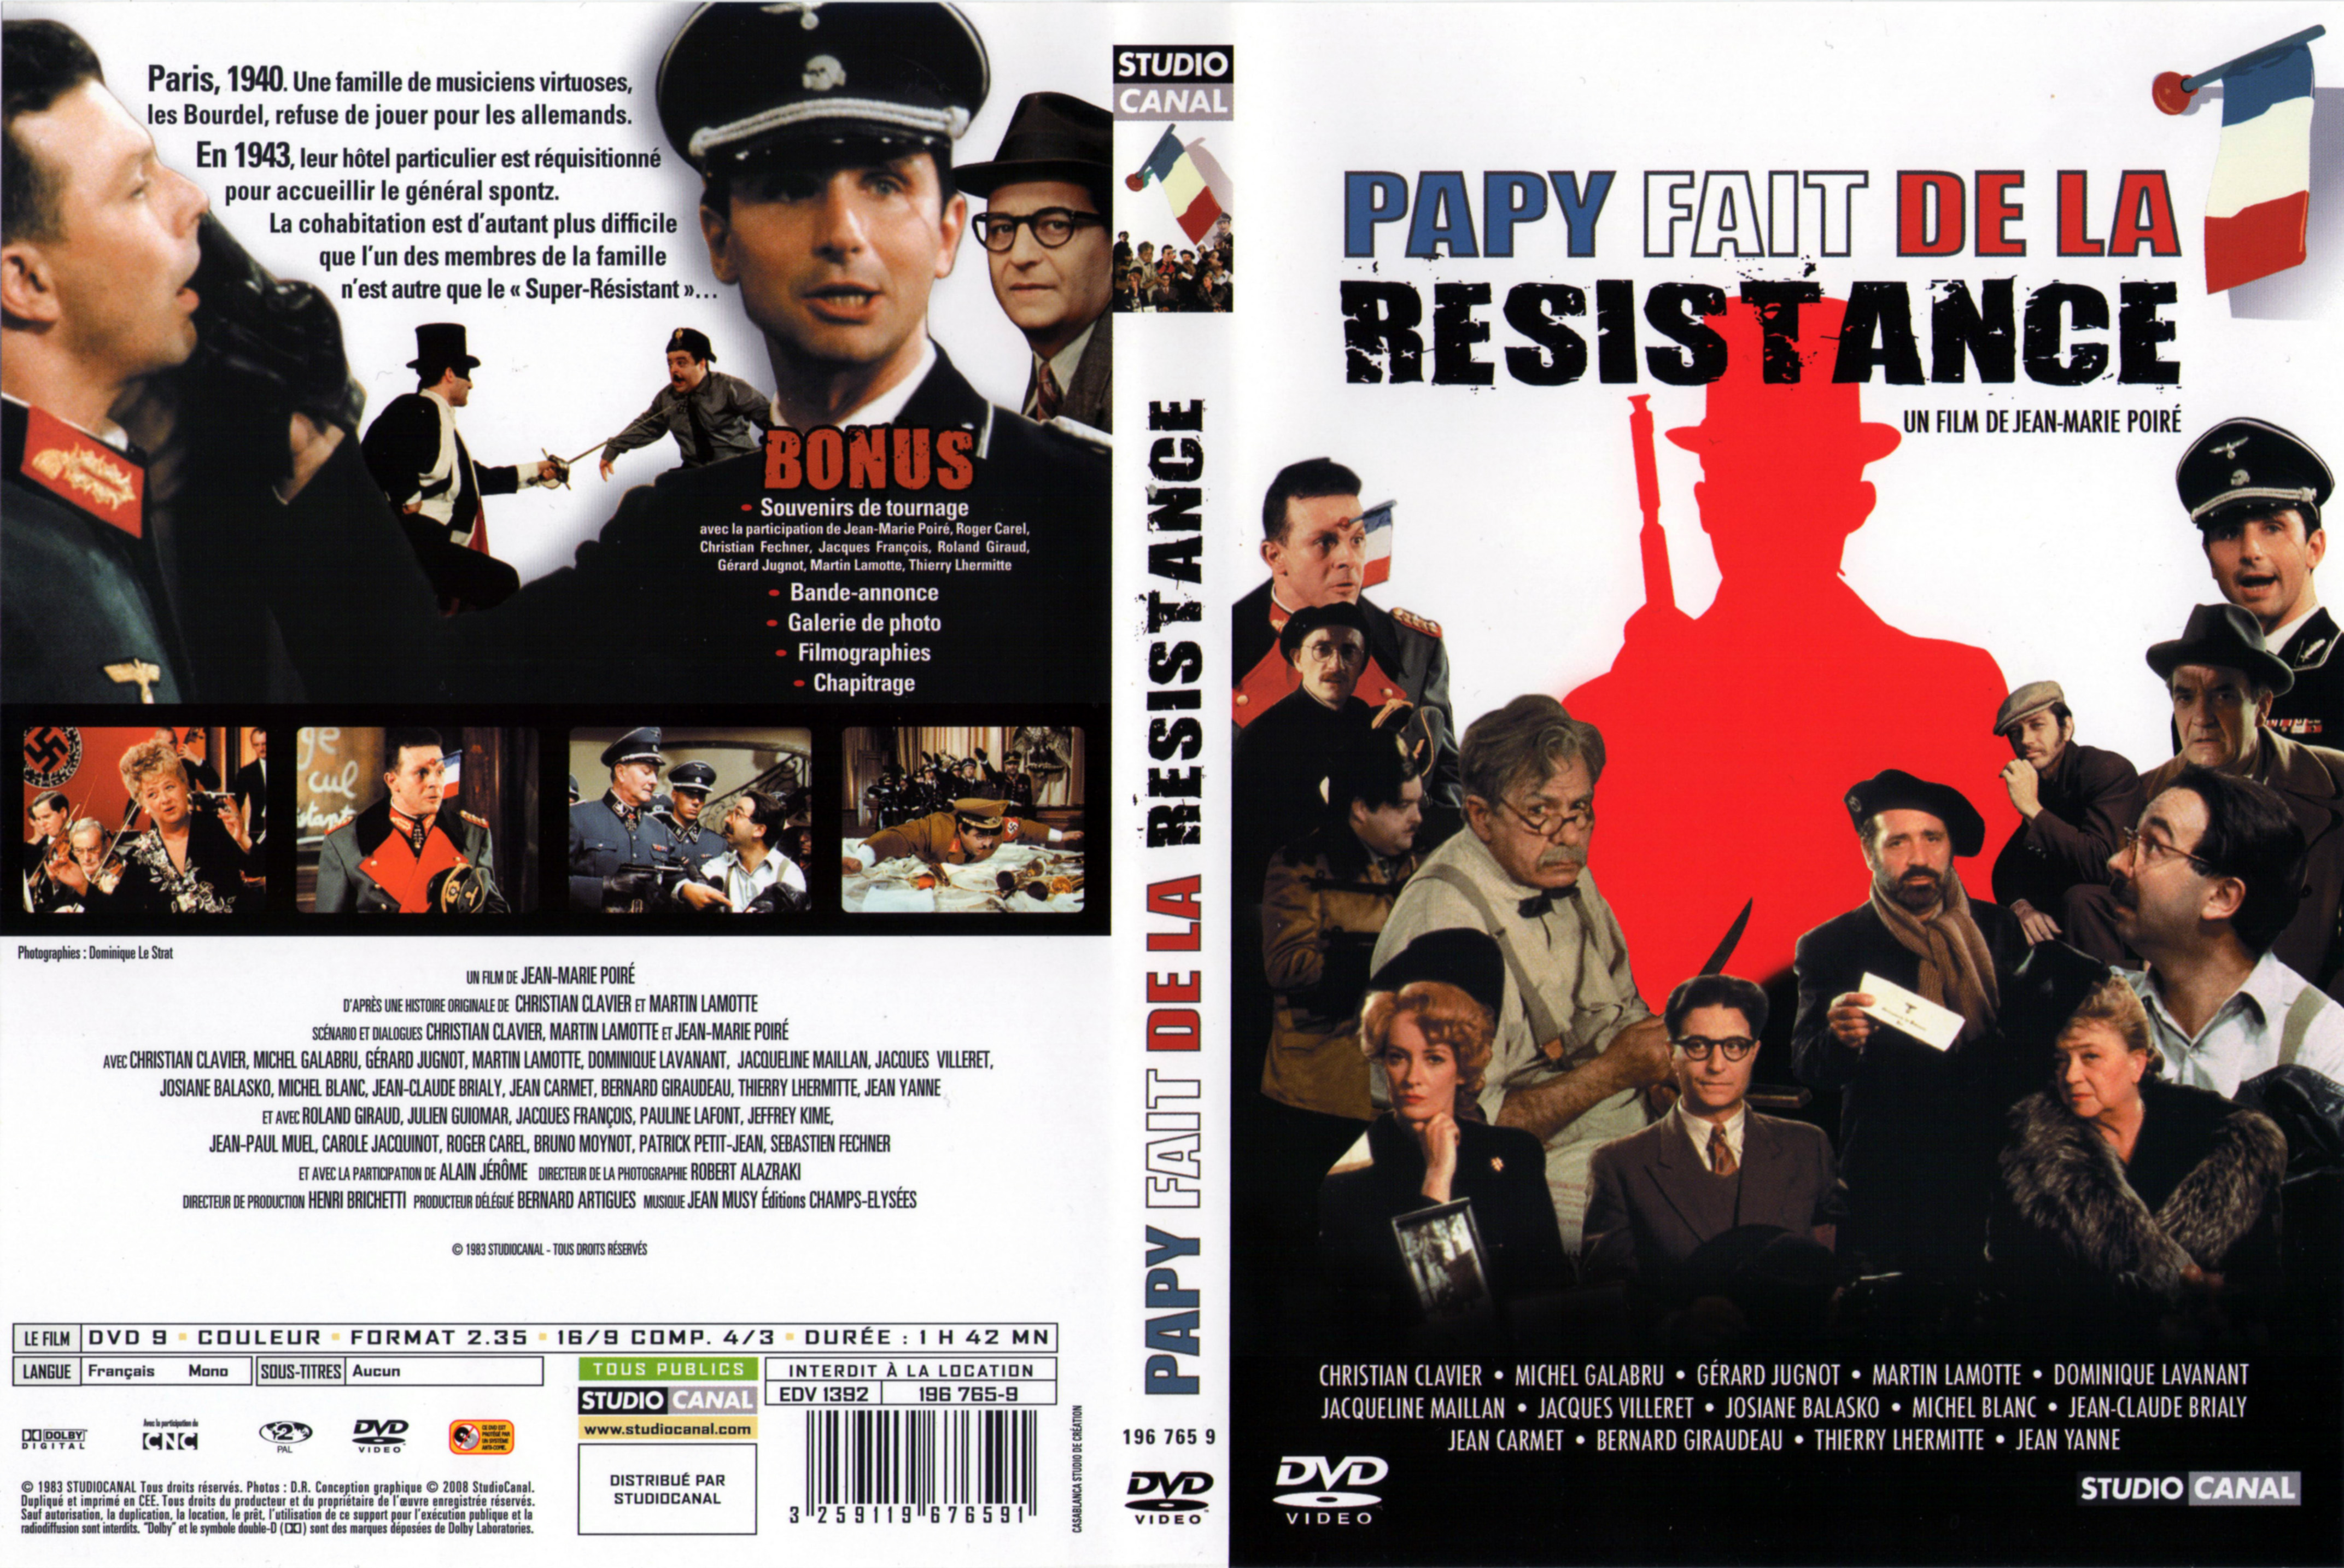 Jaquette DVD Papy fait de la resistance v3